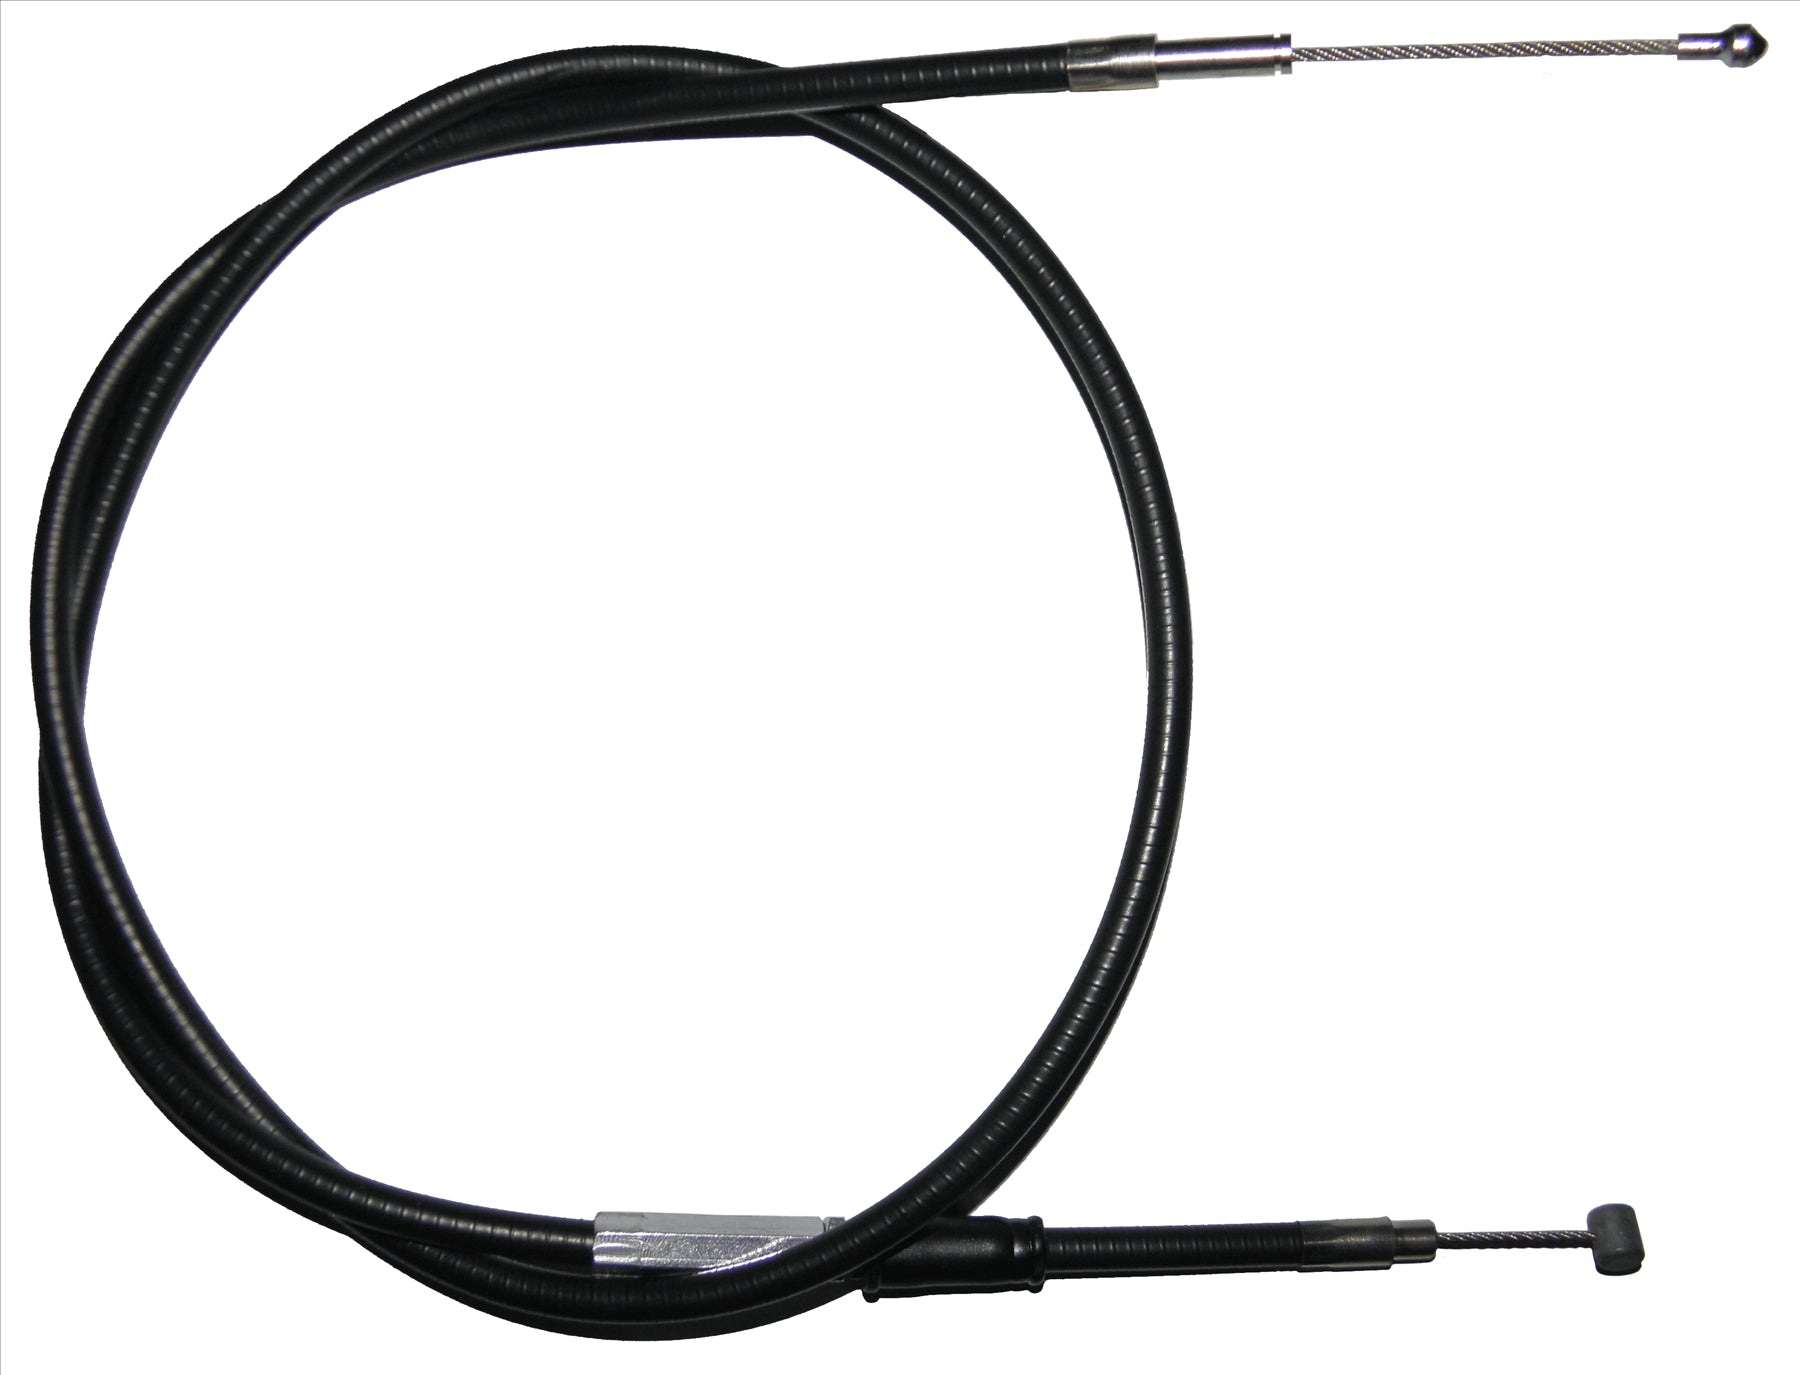 Apico Black Clutch Cable For KTM SXC 400 1997-1999